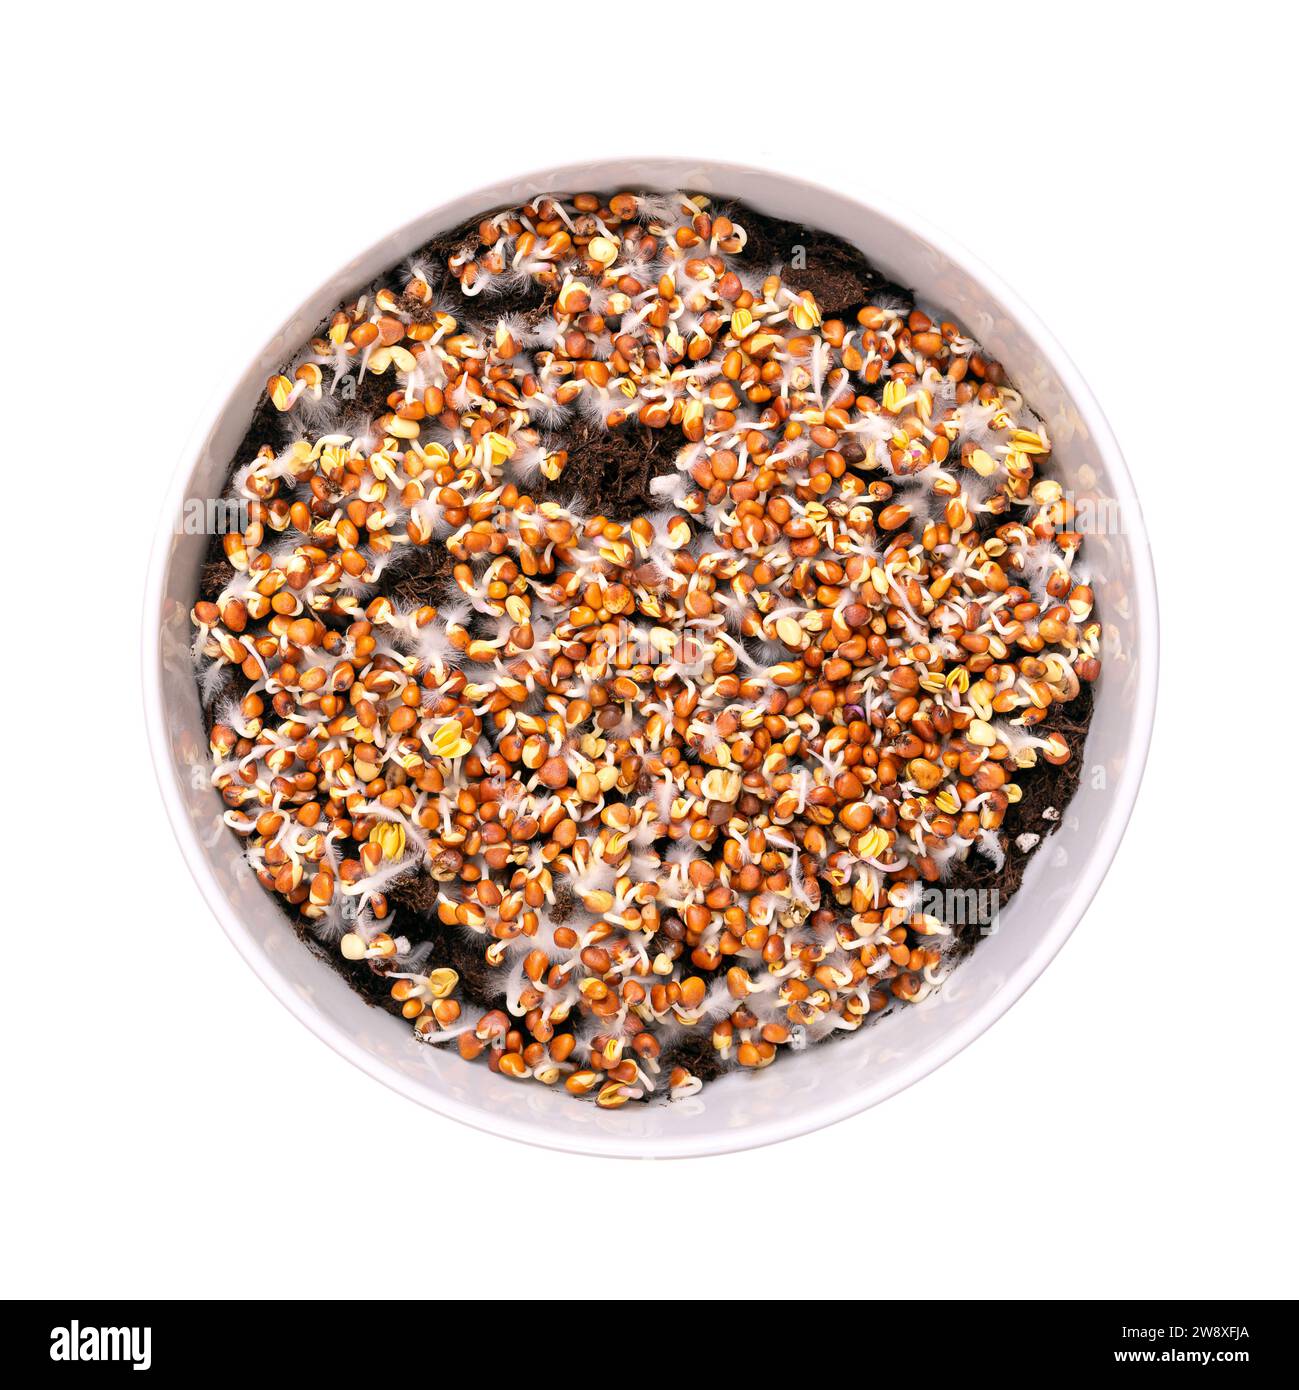 Germes de radis germant sur sol humus, dans un bol blanc. Cotylédons de Raphanus sativus, avec de petits poils racinaires, souvent confondus avec la moisissure. Banque D'Images